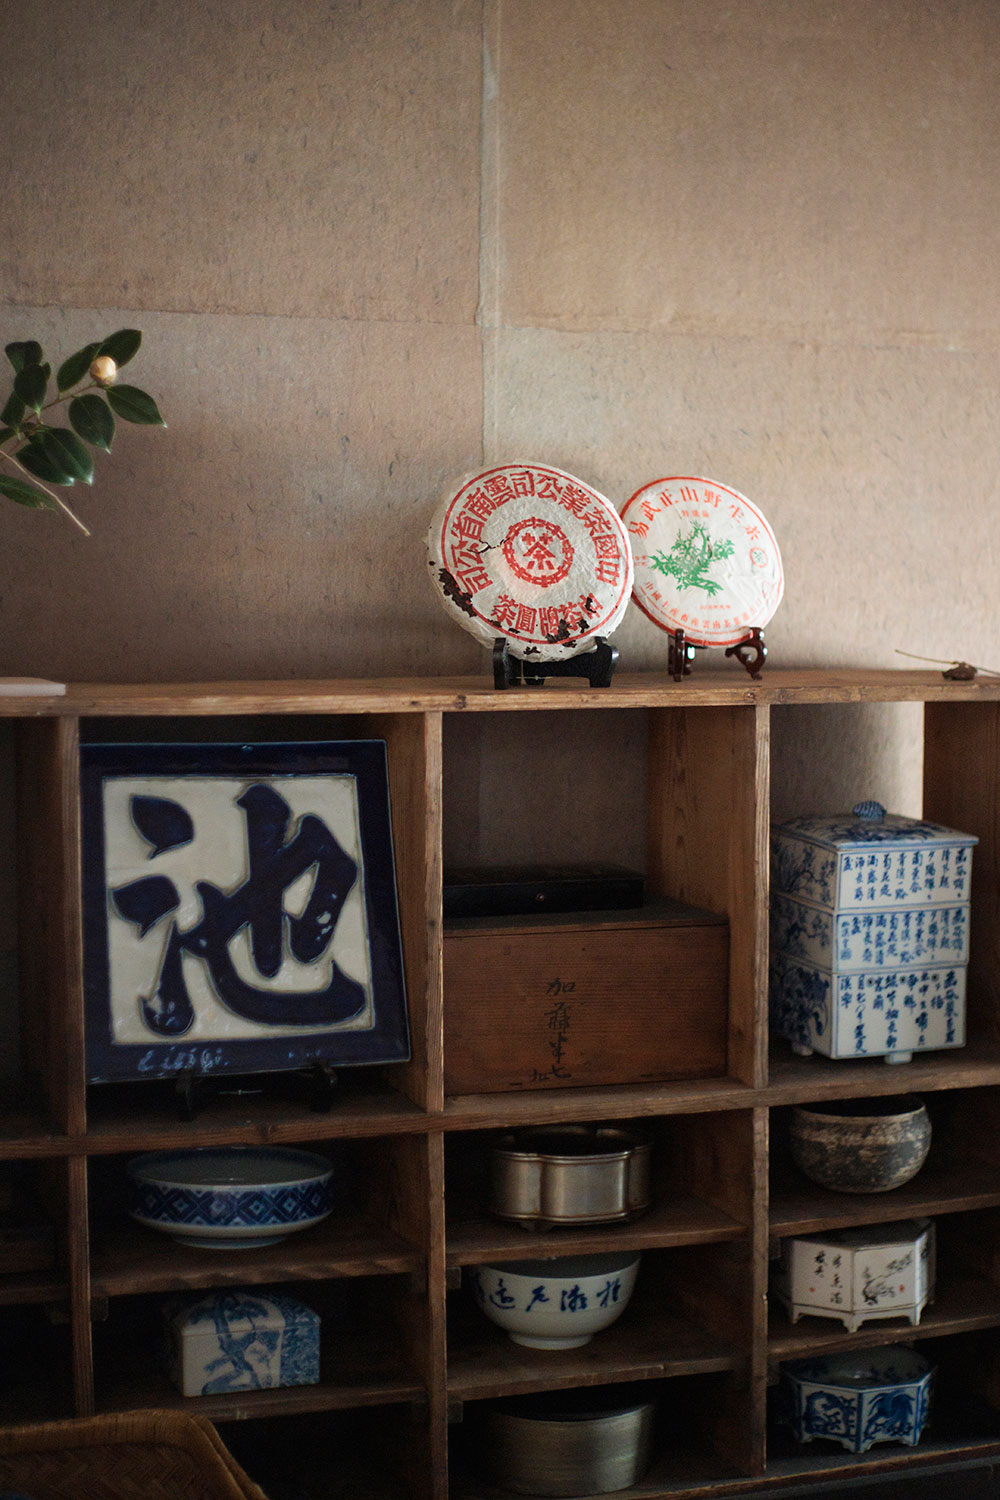 小嶋さんの実家はかつて瀬戸で陶磁器の窯元を営んでおり、残された器への興味が茶の道へ進ませた。